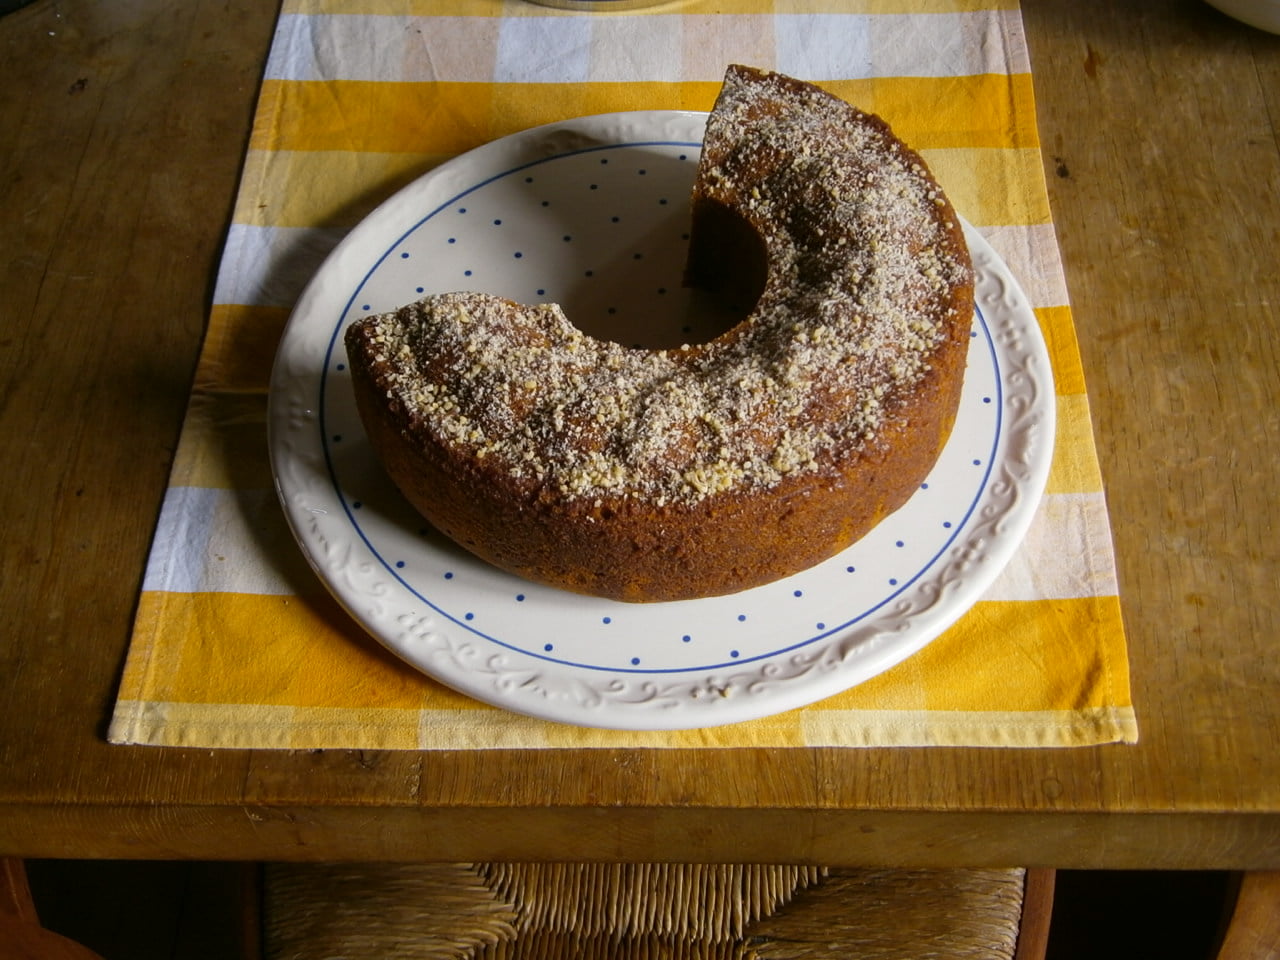 Vollkorn-Kuchen mit Bio-Honig auf Kuchenplatte.